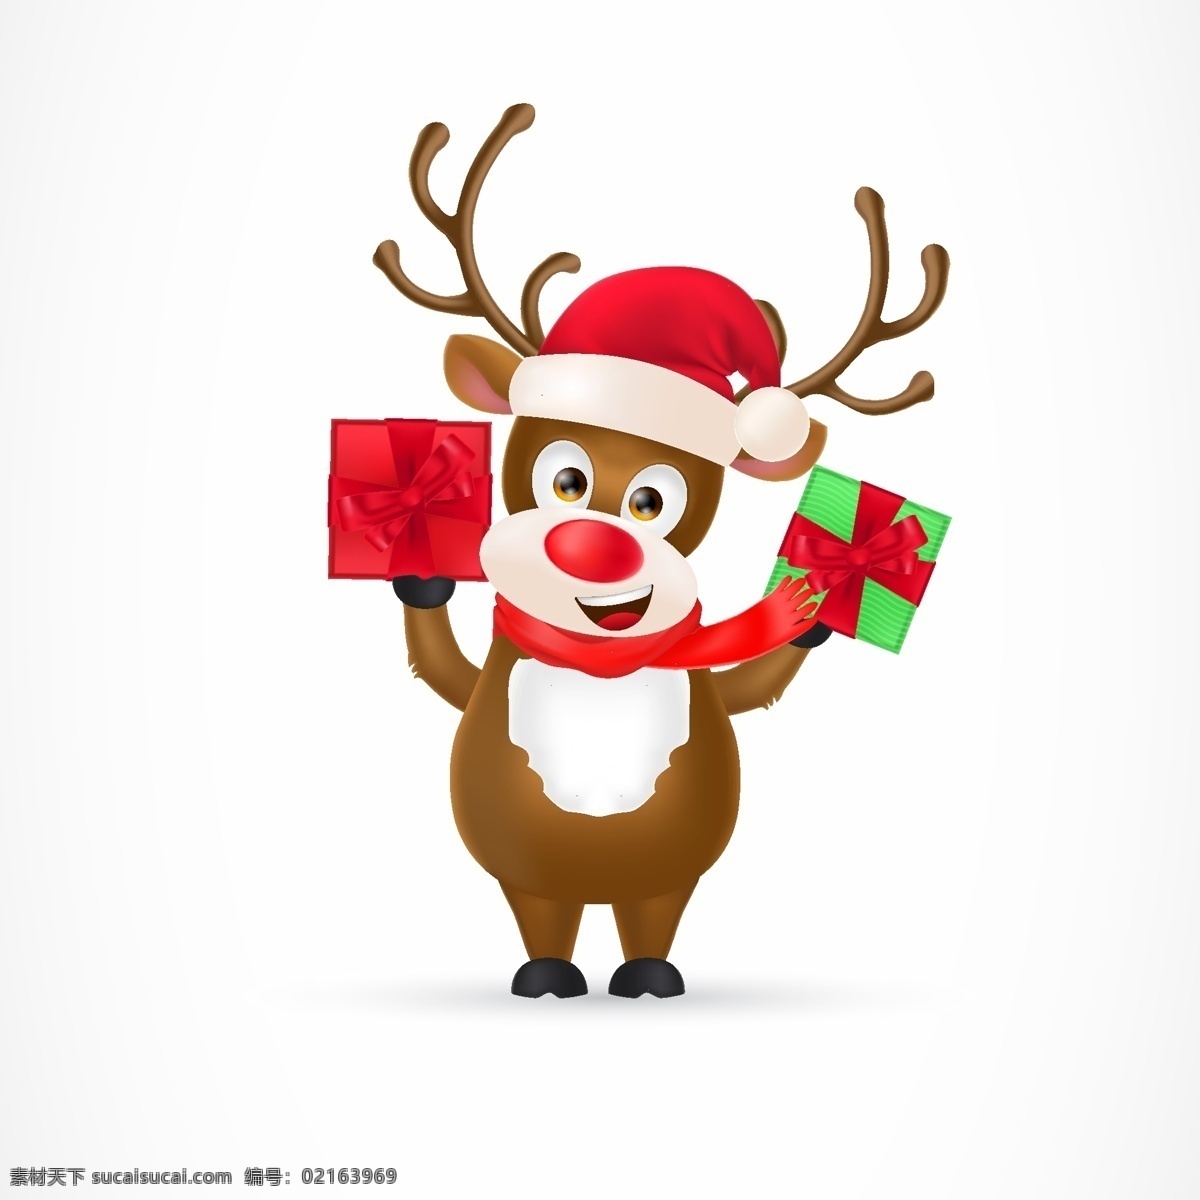 圣诞 卡通 驯鹿 动物 节日素材 卡通驯鹿 圣诞节 圣诞素材 圣诞驯鹿素材 圣诞元素 矢量动物